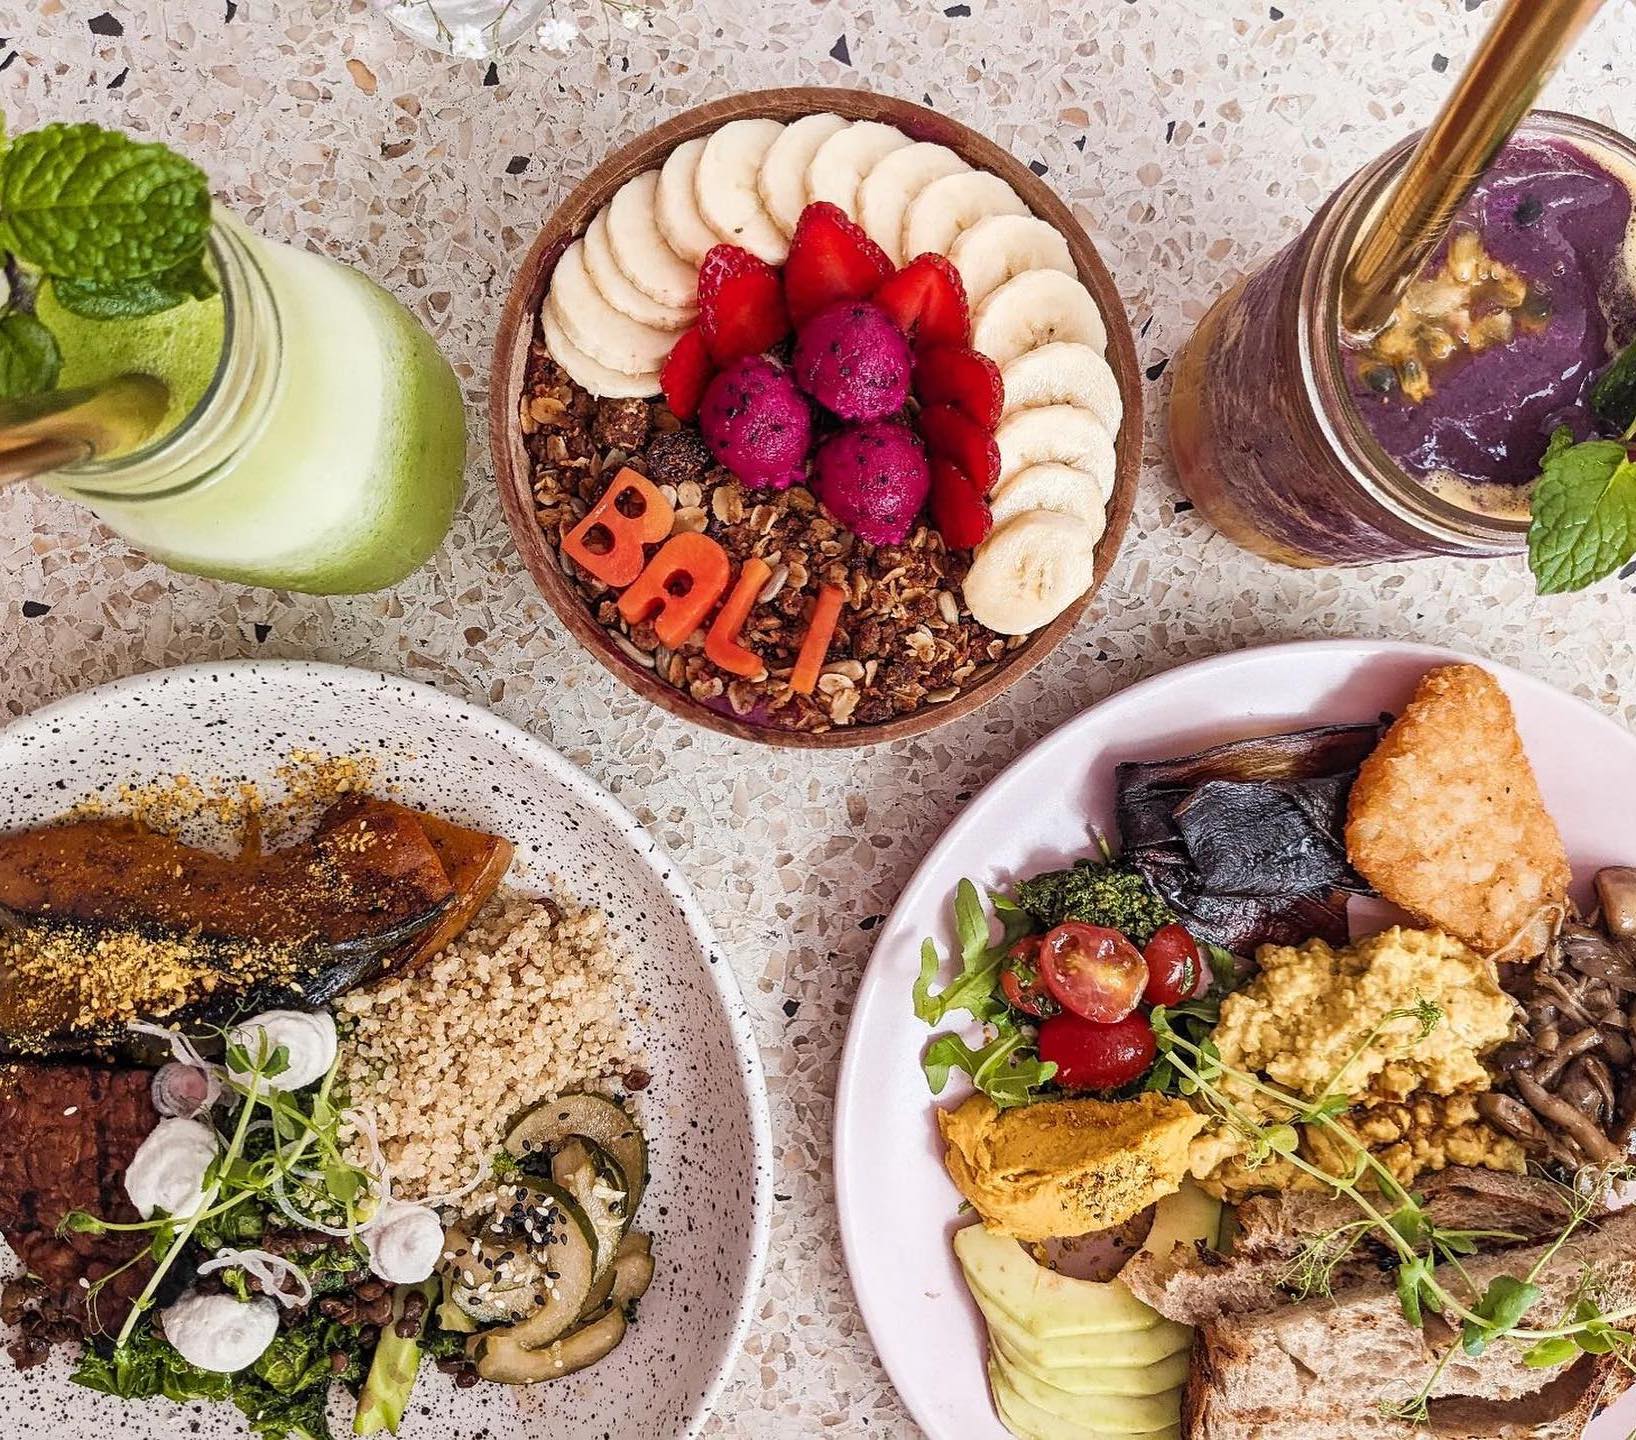 10 vegan restaurants commanding the Bali foodie scene in 2023